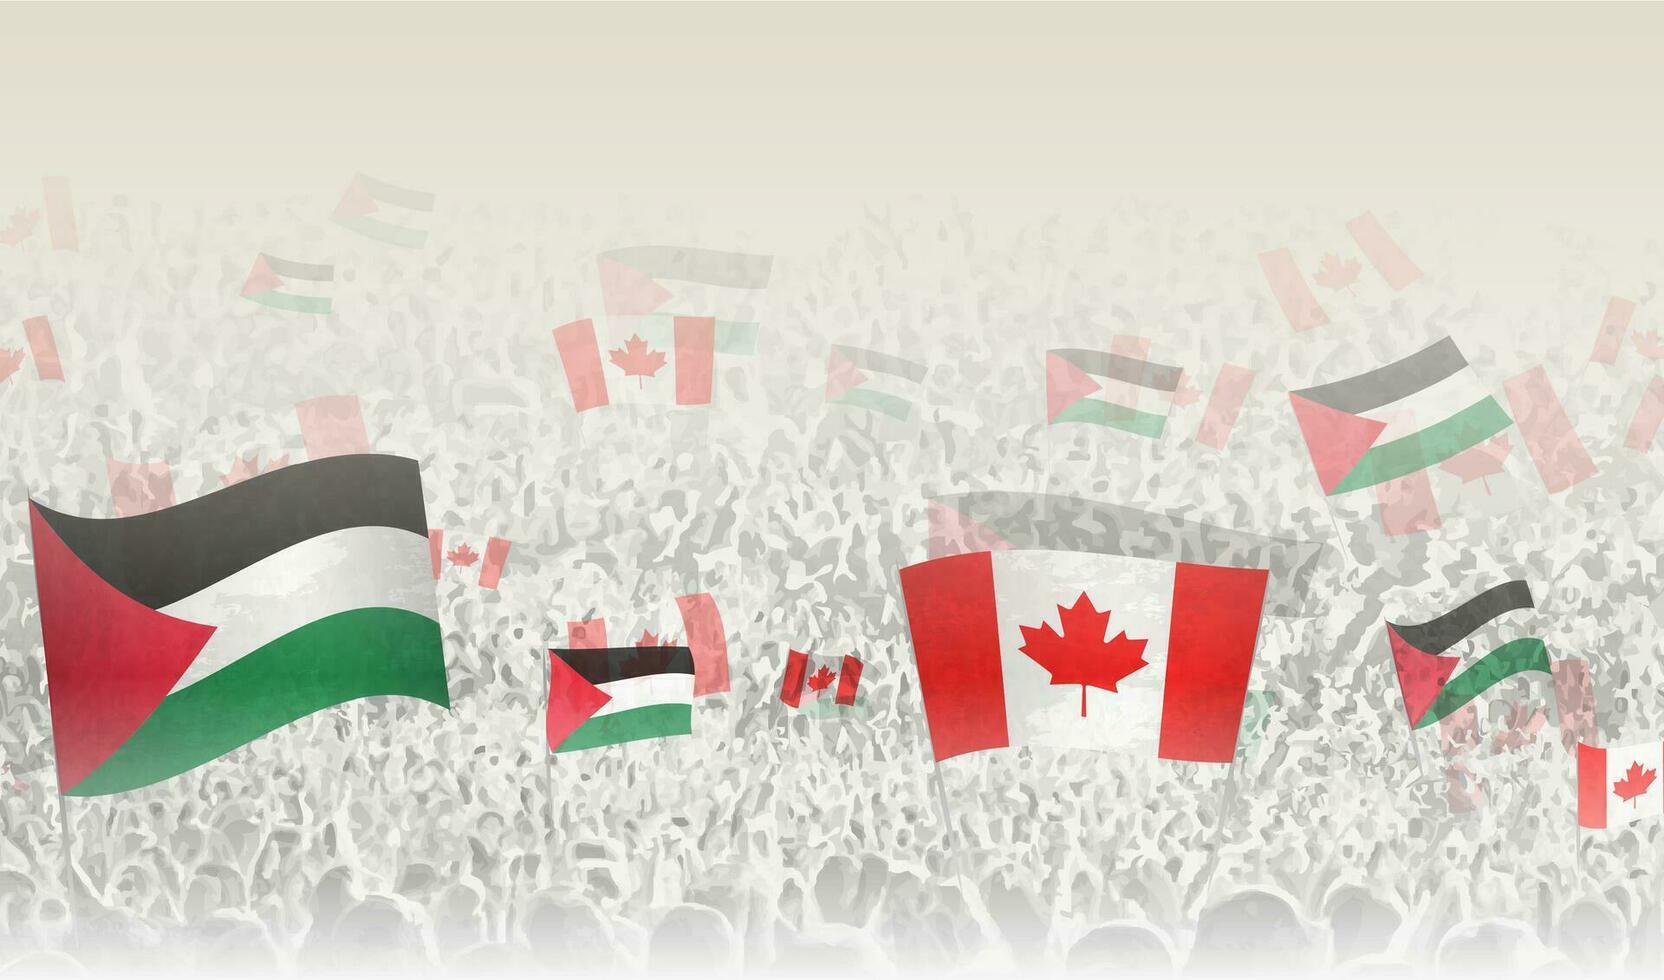 Palestina y Canadá banderas en un multitud de aplausos gente. vector